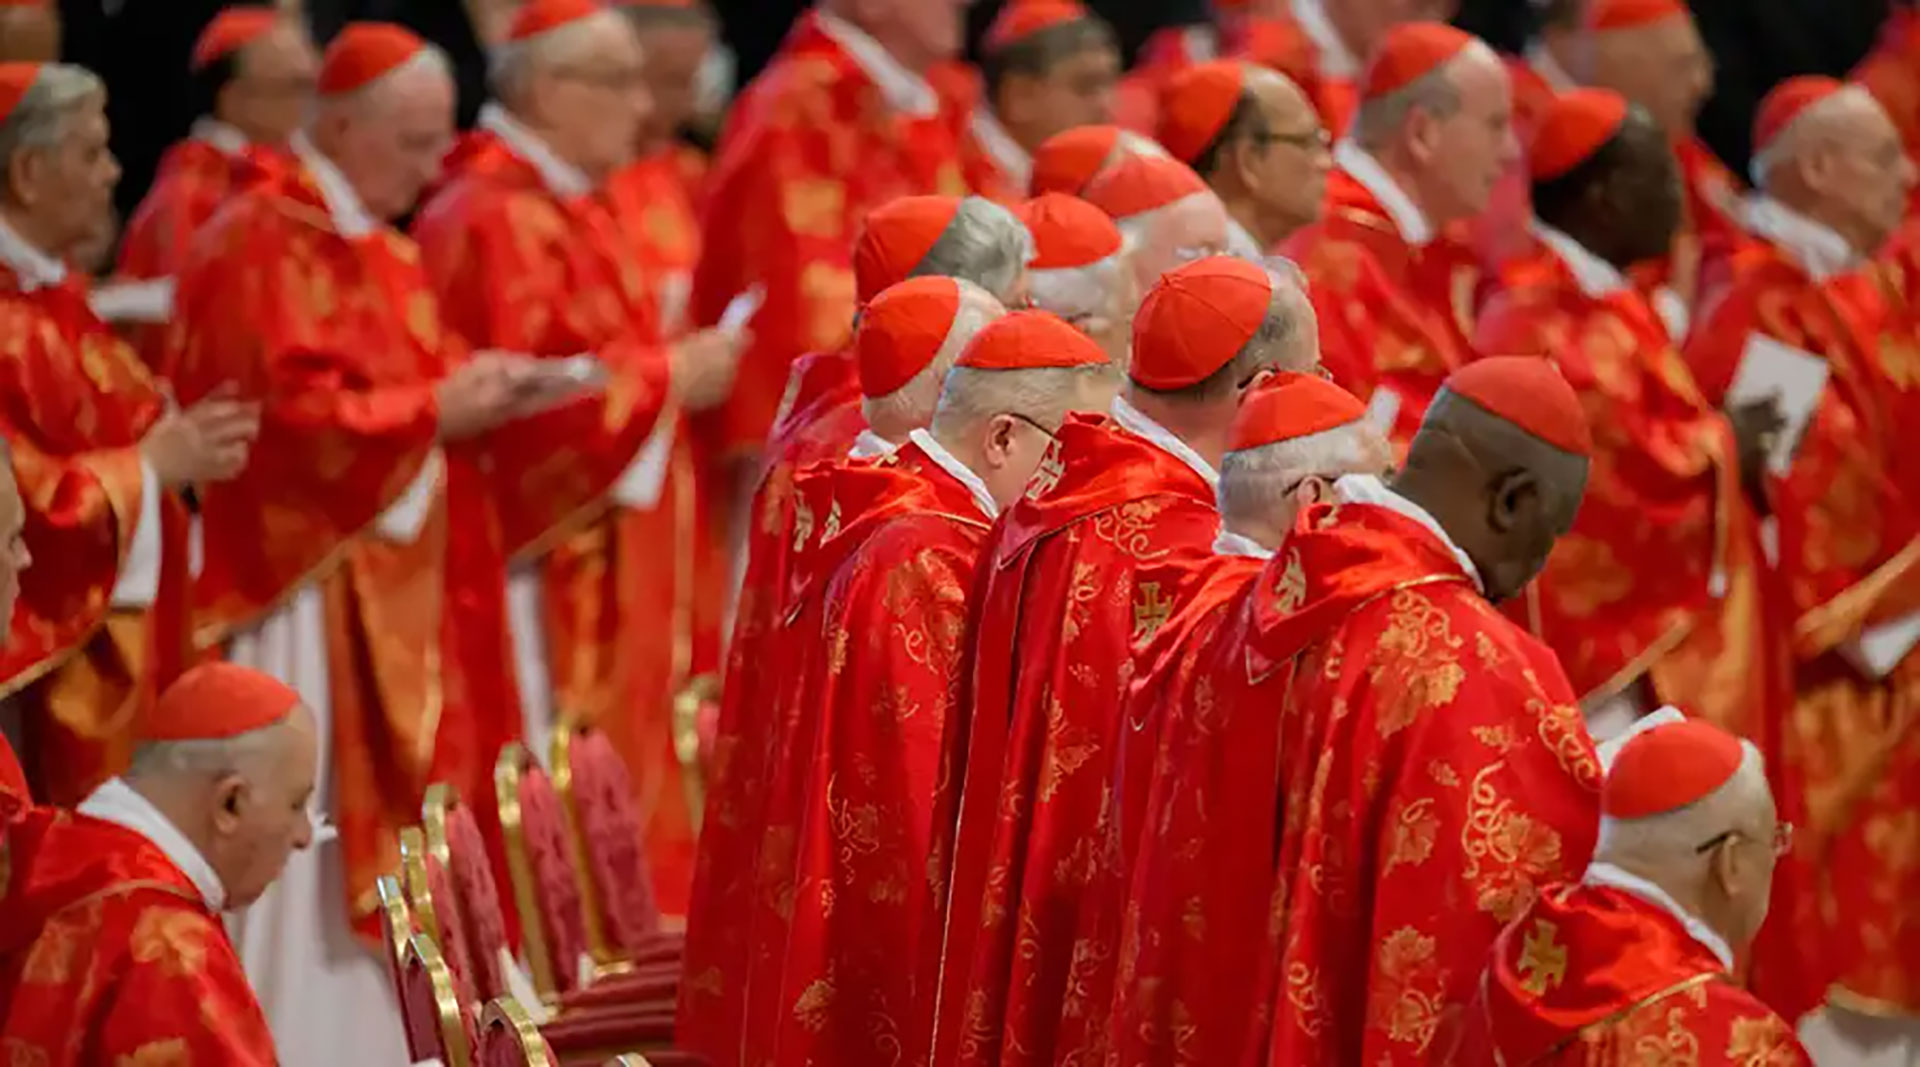 Papas, cardenales, obispos, presbíteros: cómo se compone la jerarquía eclesiástica católica y qué deberes tienen